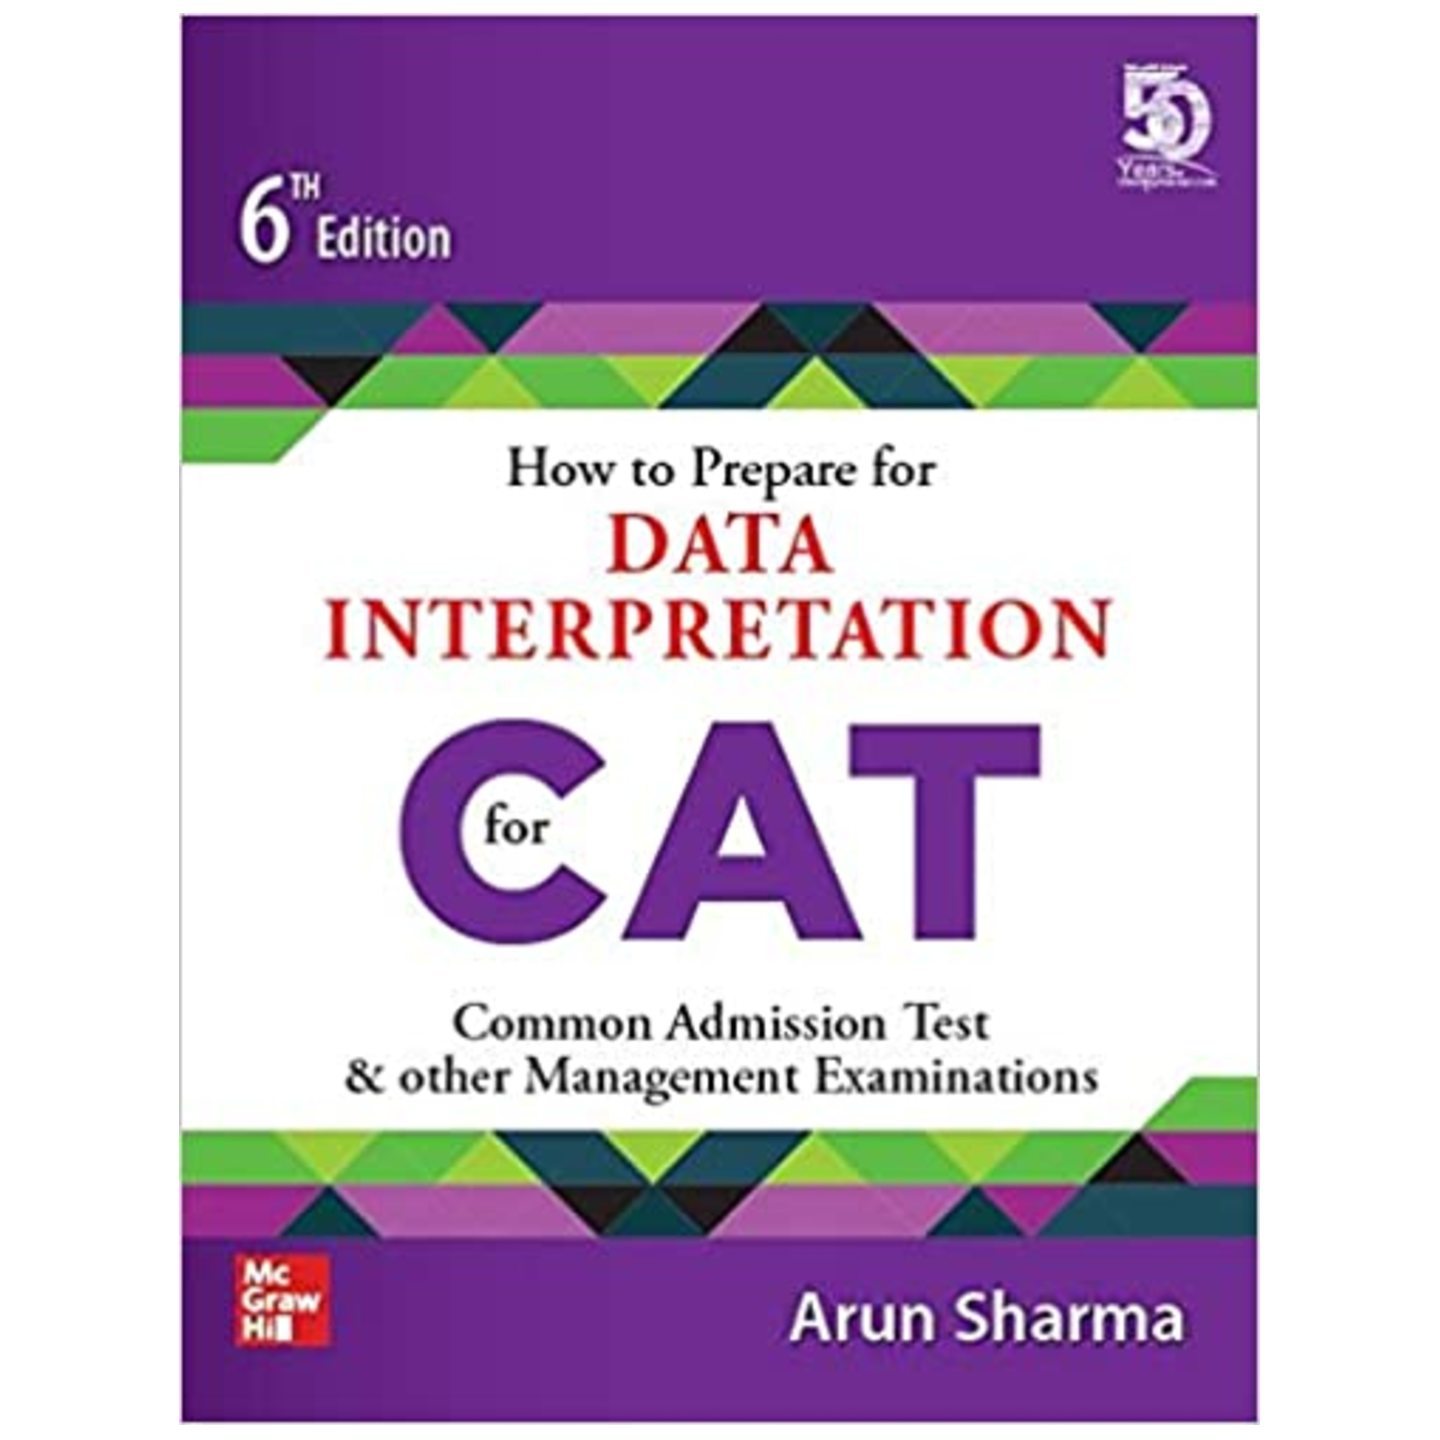 MC GRAW HILL How to Prepare for DATA INTERPRETATION for CAT ARUN SHARMA